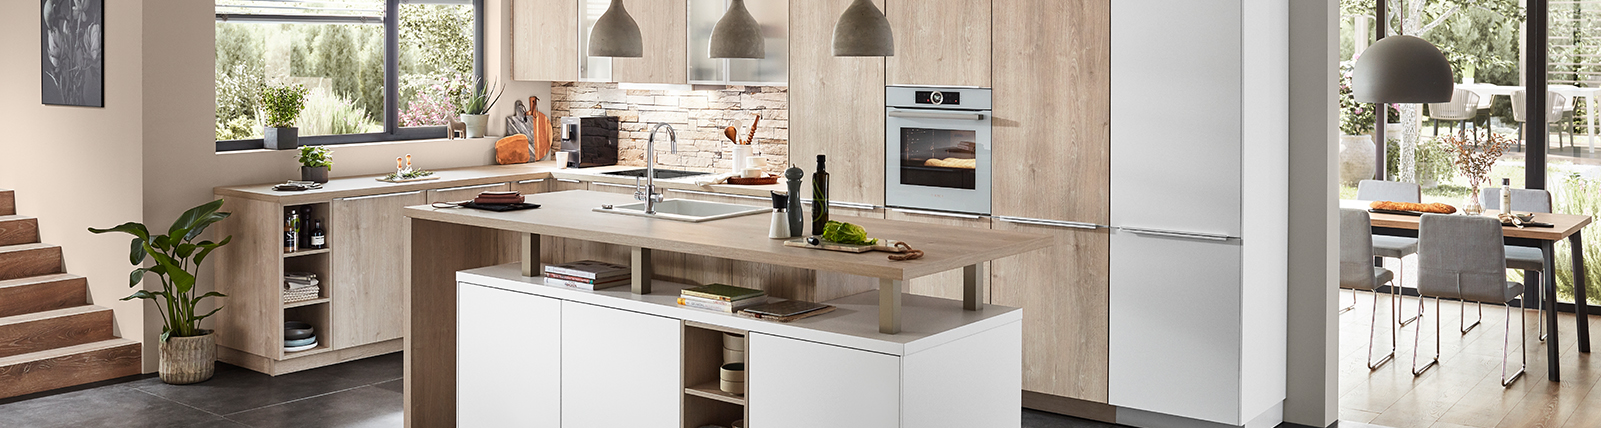 Zeitgemäßes Küchendesign mit klaren Linien, eingebauten Geräten, zentralem Kochinsel und reichlich natürlichem Licht, das einen funktionalen, stilvollen Raum schafft.